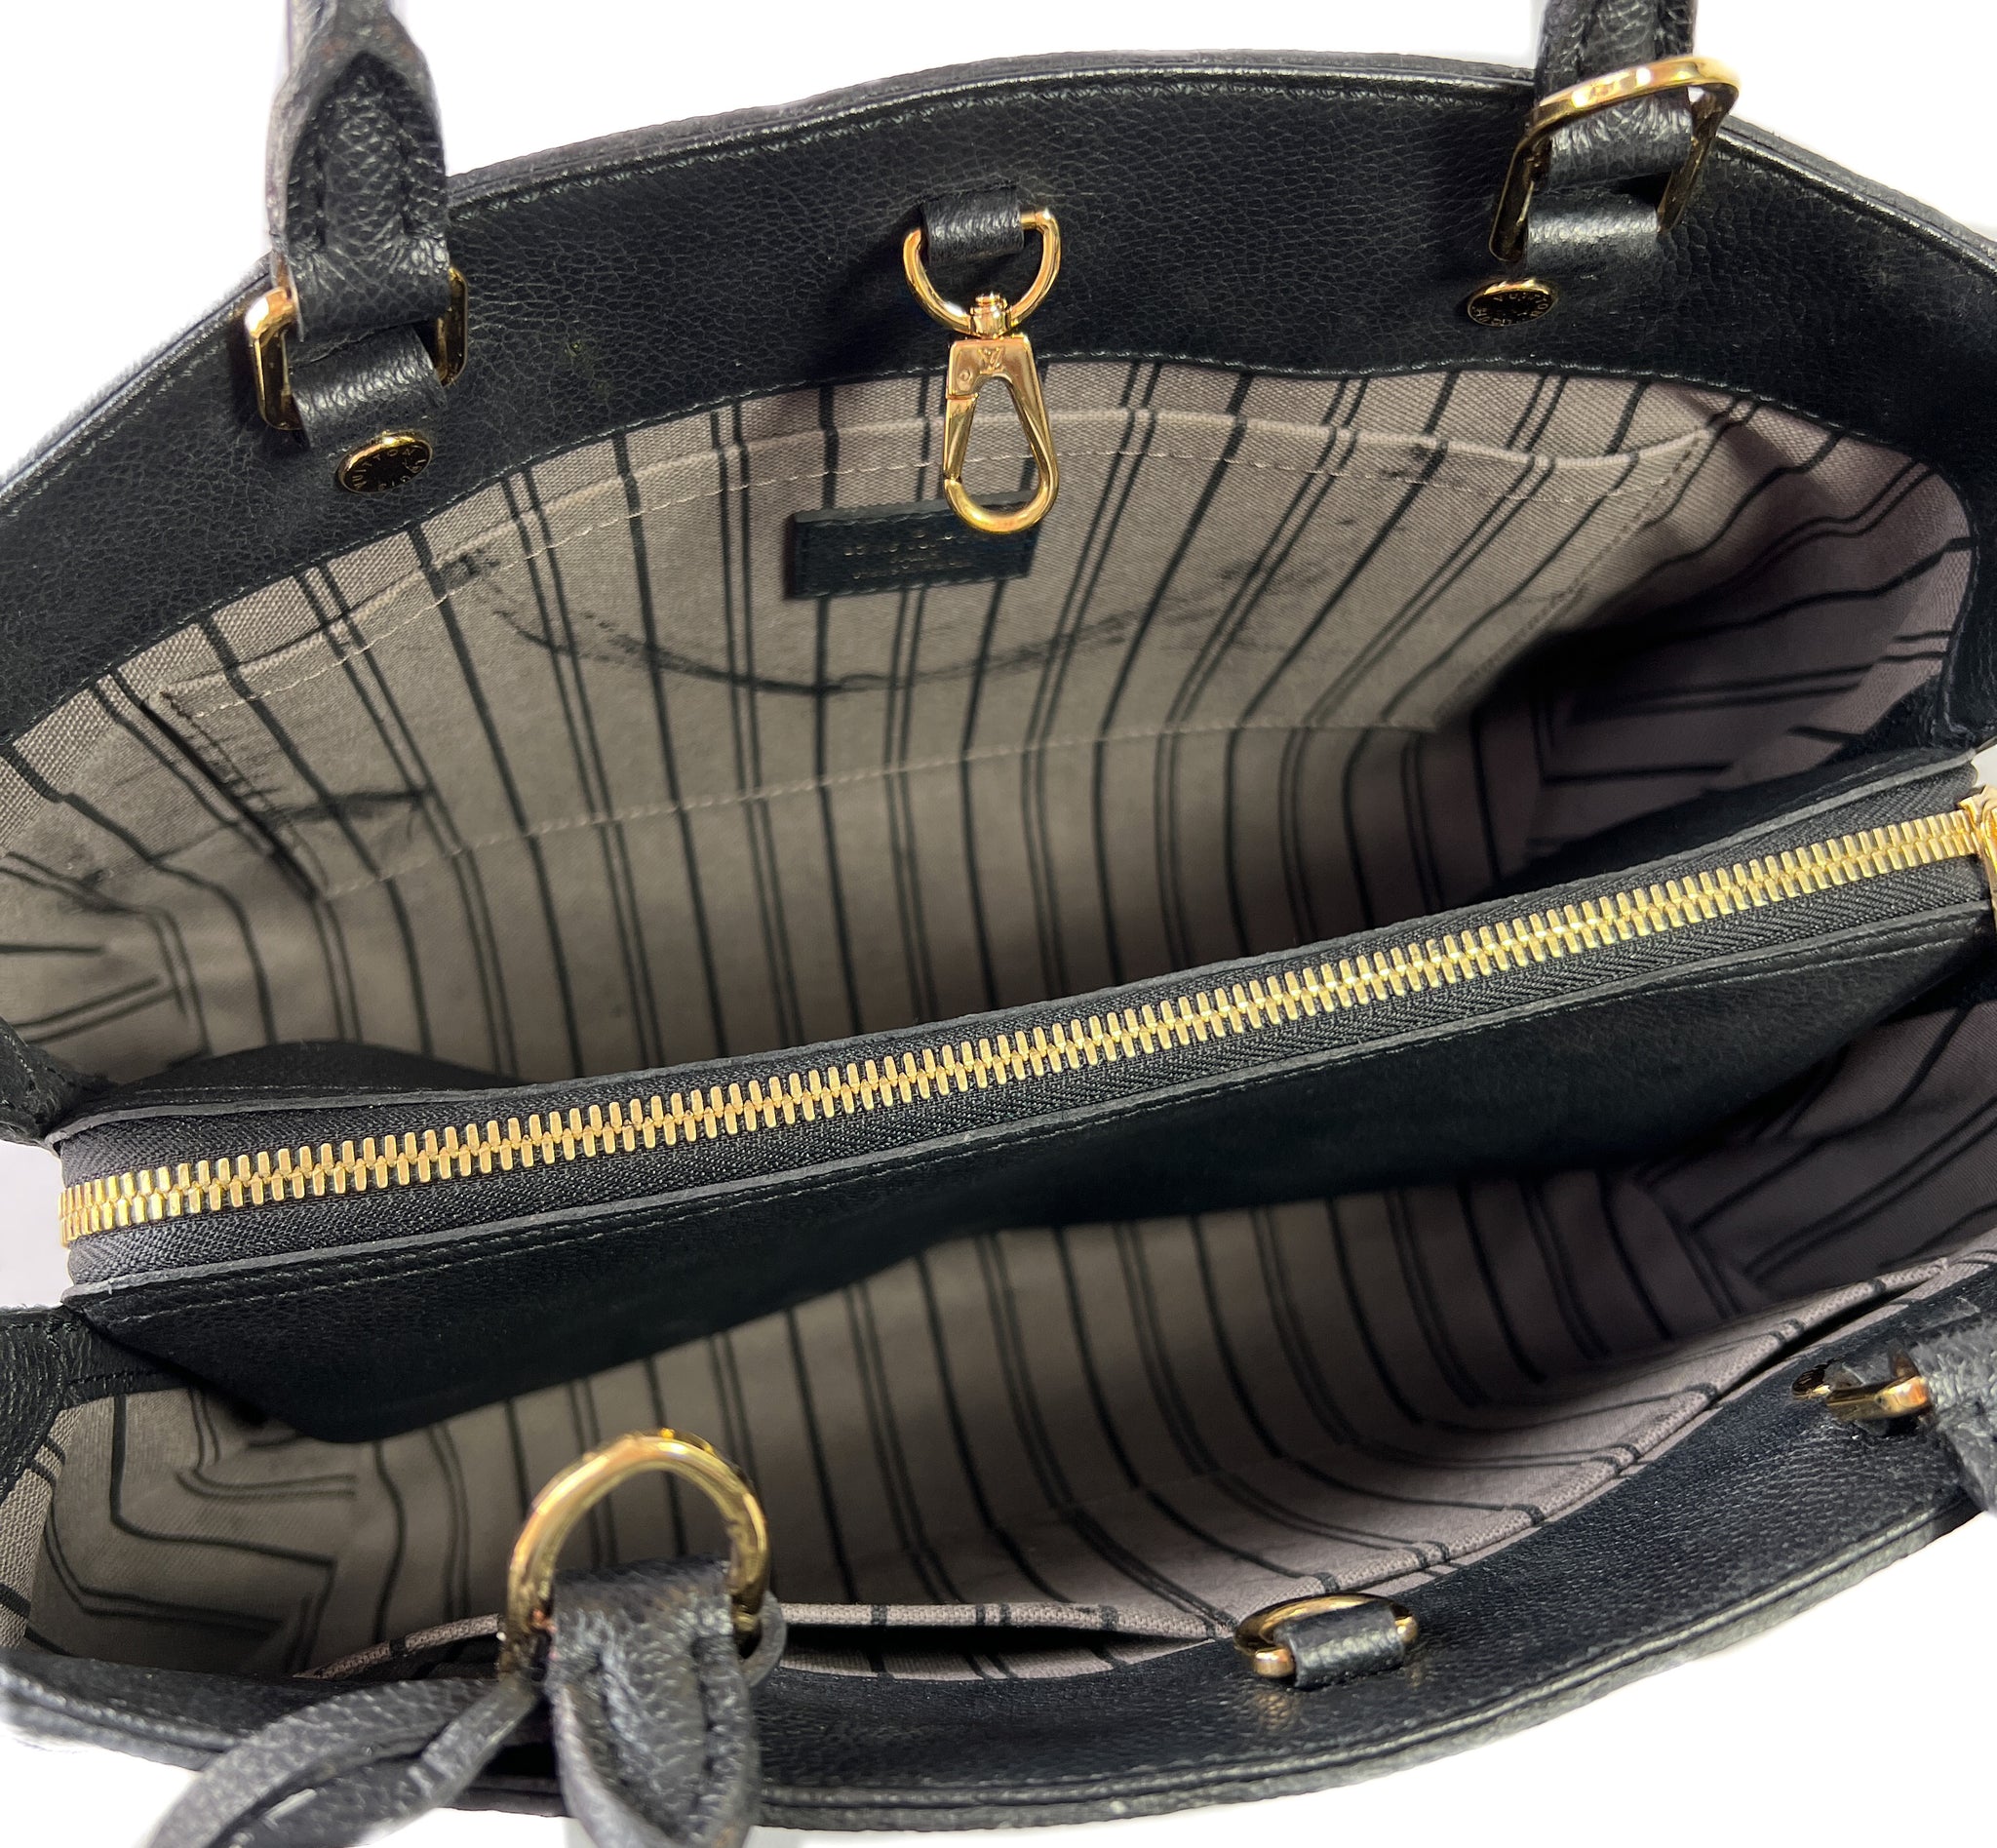 Louis Vuitton black empreinte Montaigne 2014 – My Girlfriend's